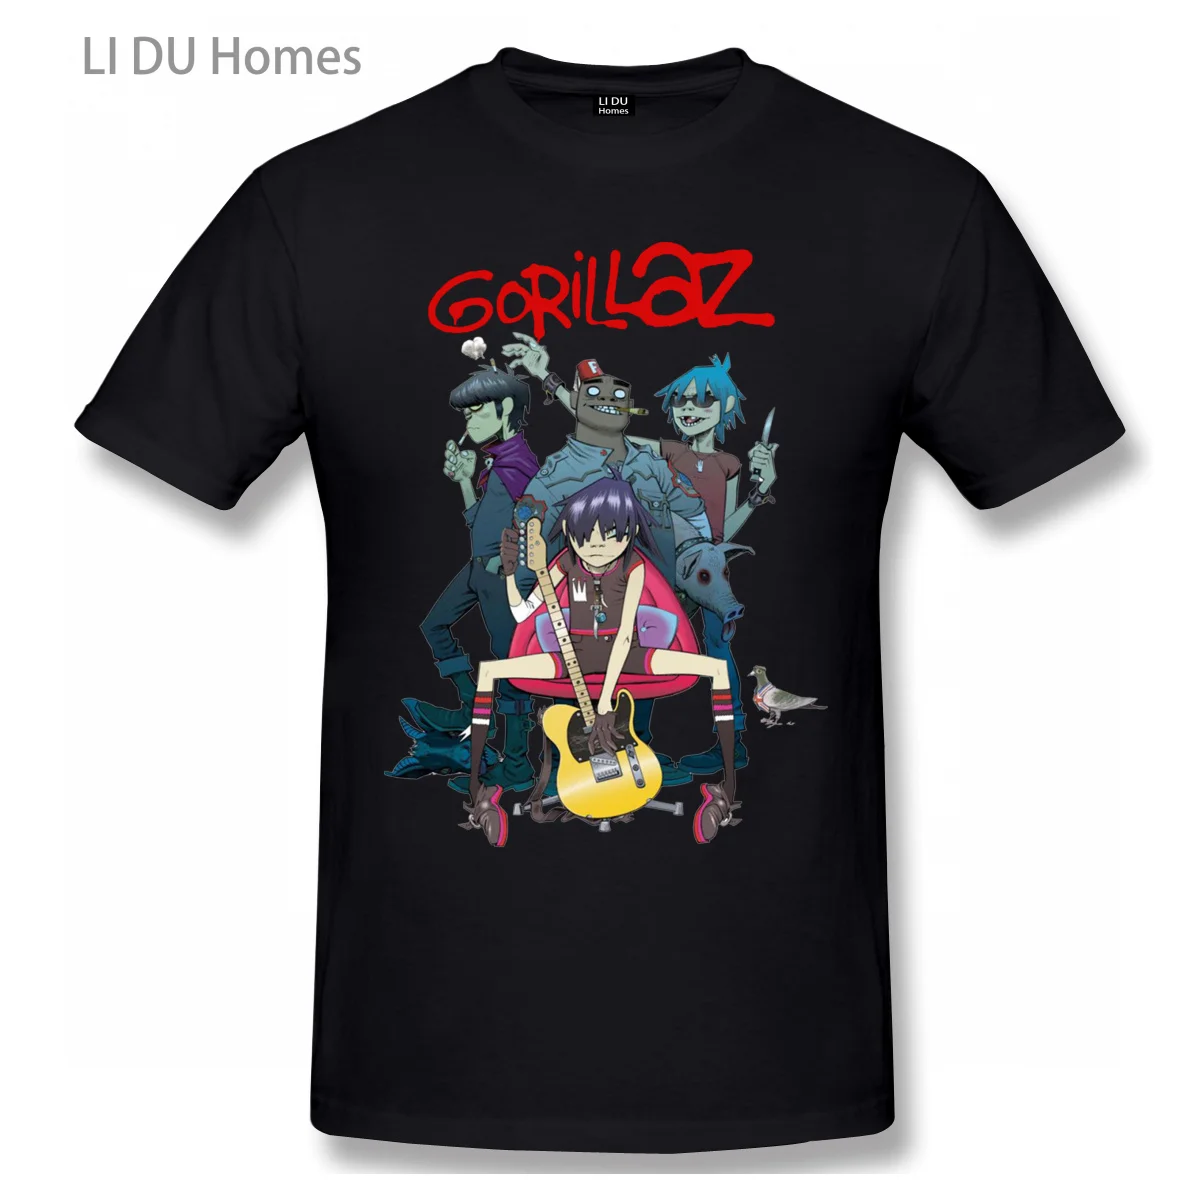 

Gorillaz T Shirt Men/WoMen High Quality Cotton Summer T-shirt Short Sleeve Graphics Tshirt Brands Tee Top Gift